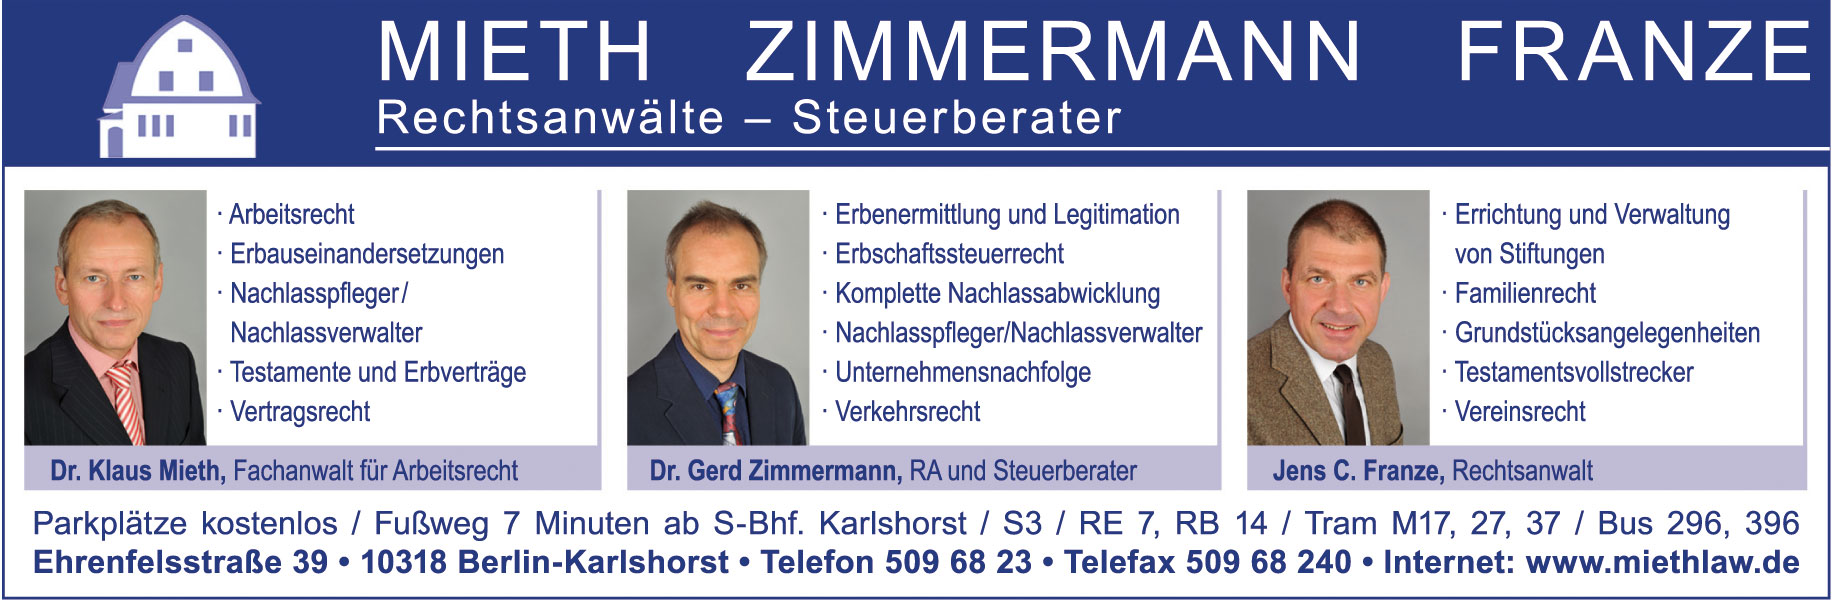 Anzeige von Mieth Zimmermann Franze – Rechtsanwälte GbR – Steuerberater